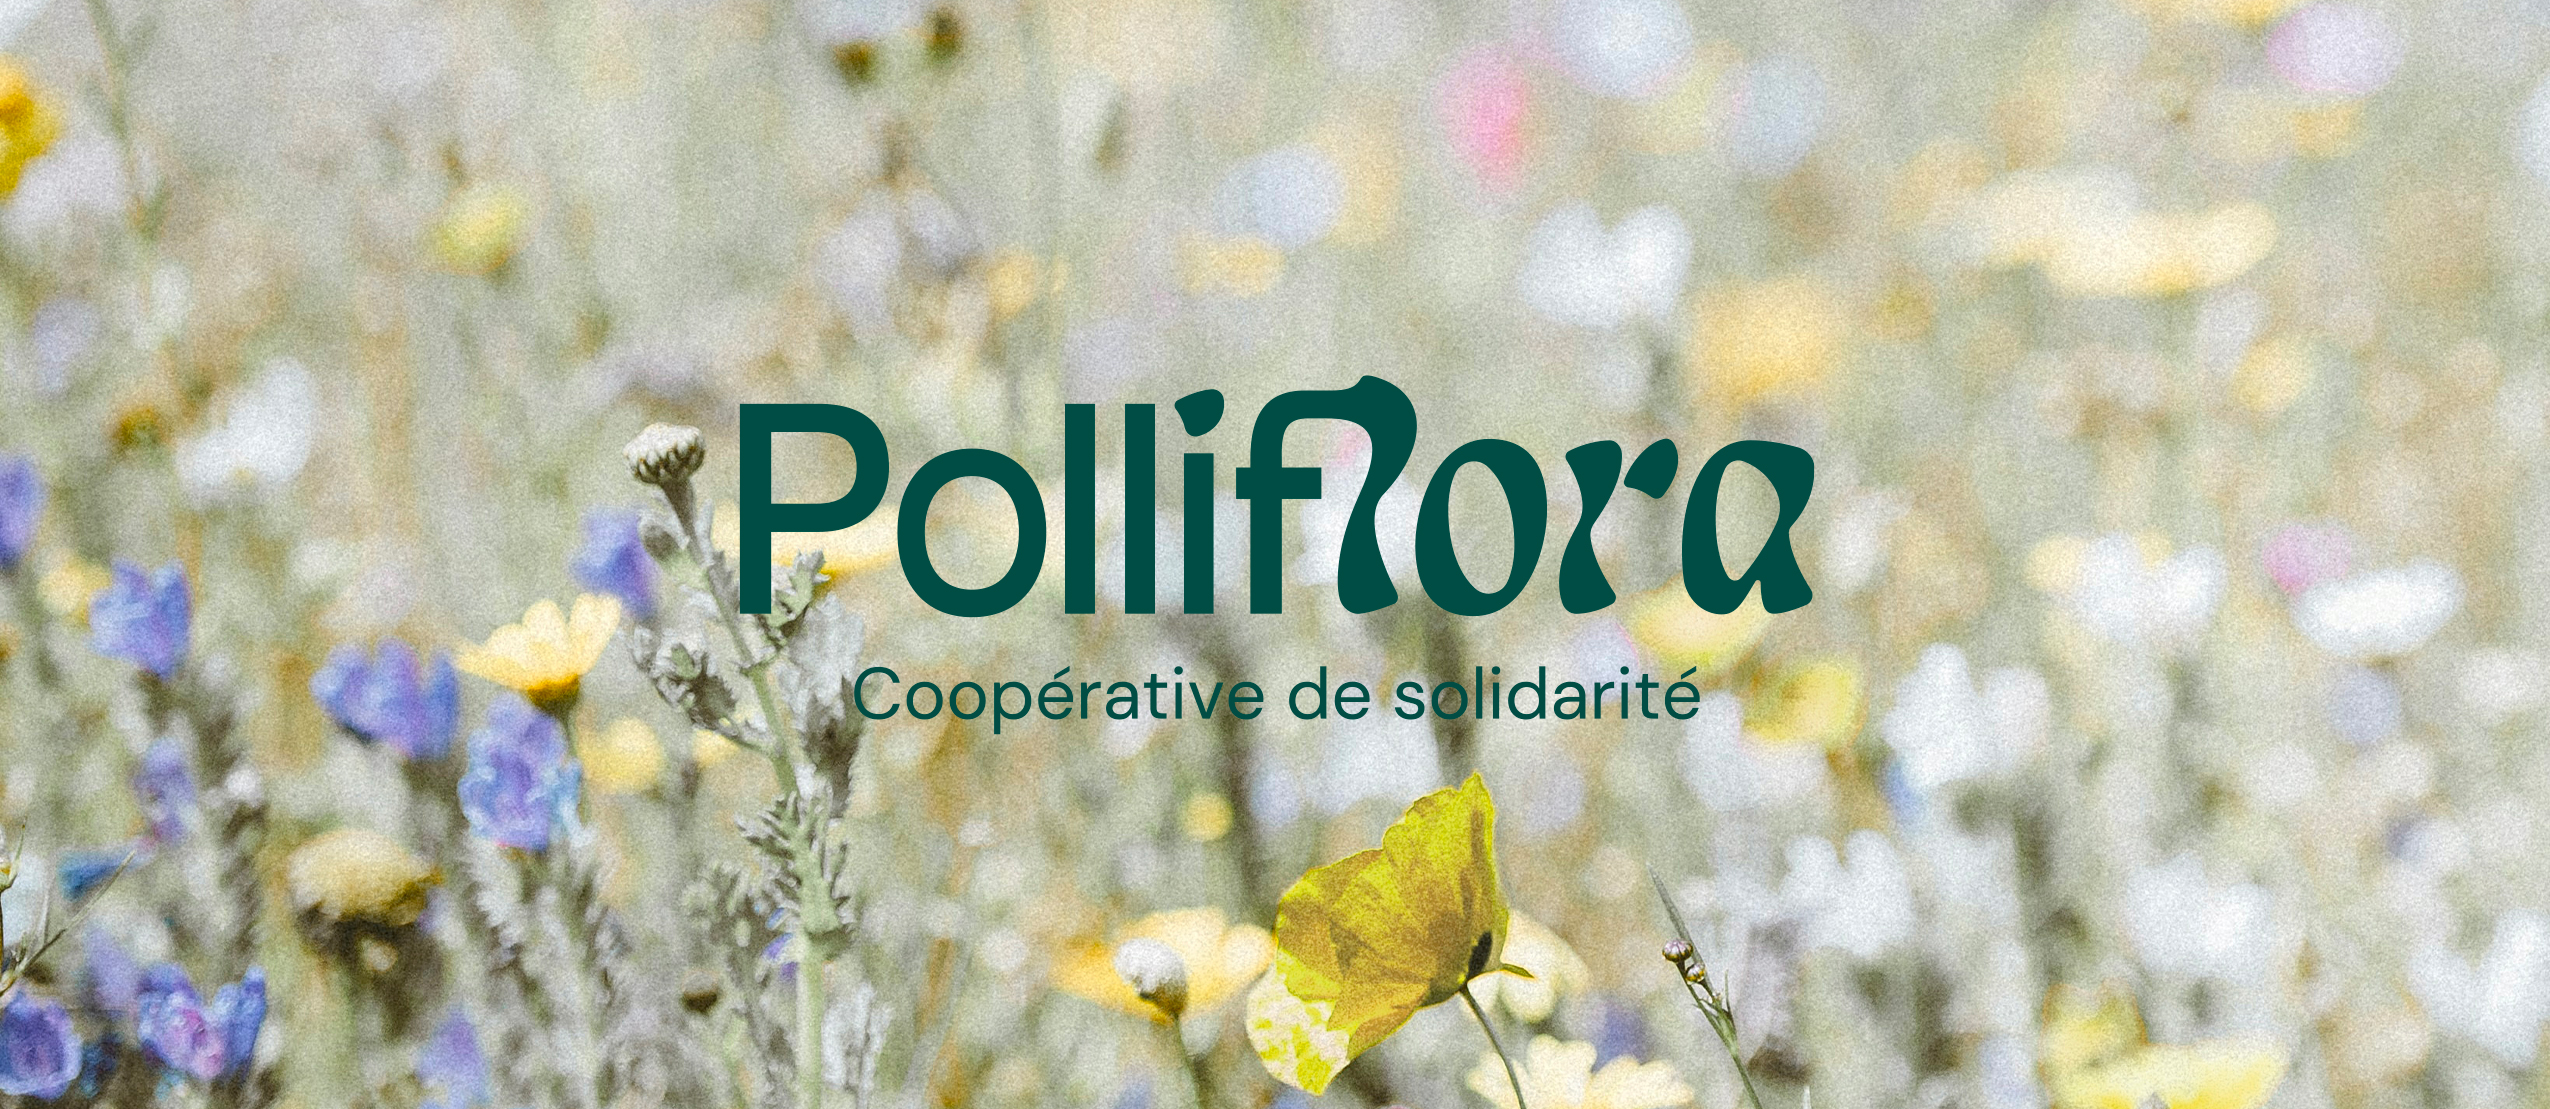 Logo de Polliflora sur une image de fleurs